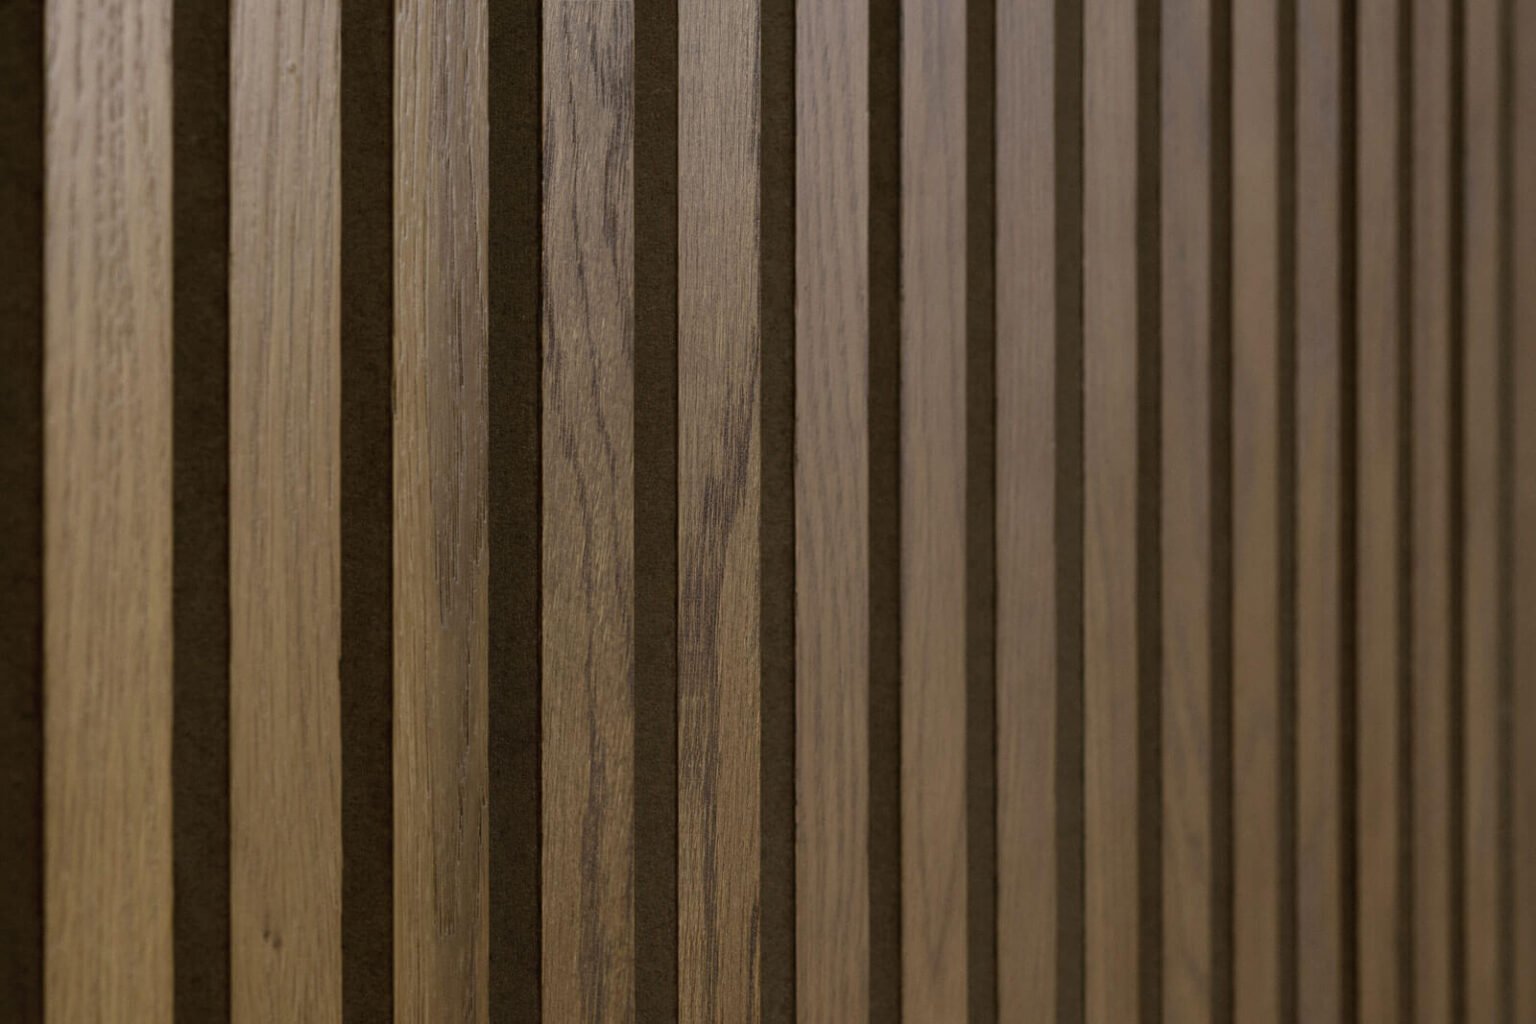 Antwerp Wood Slat Wall Panels For Sale, Buy Online